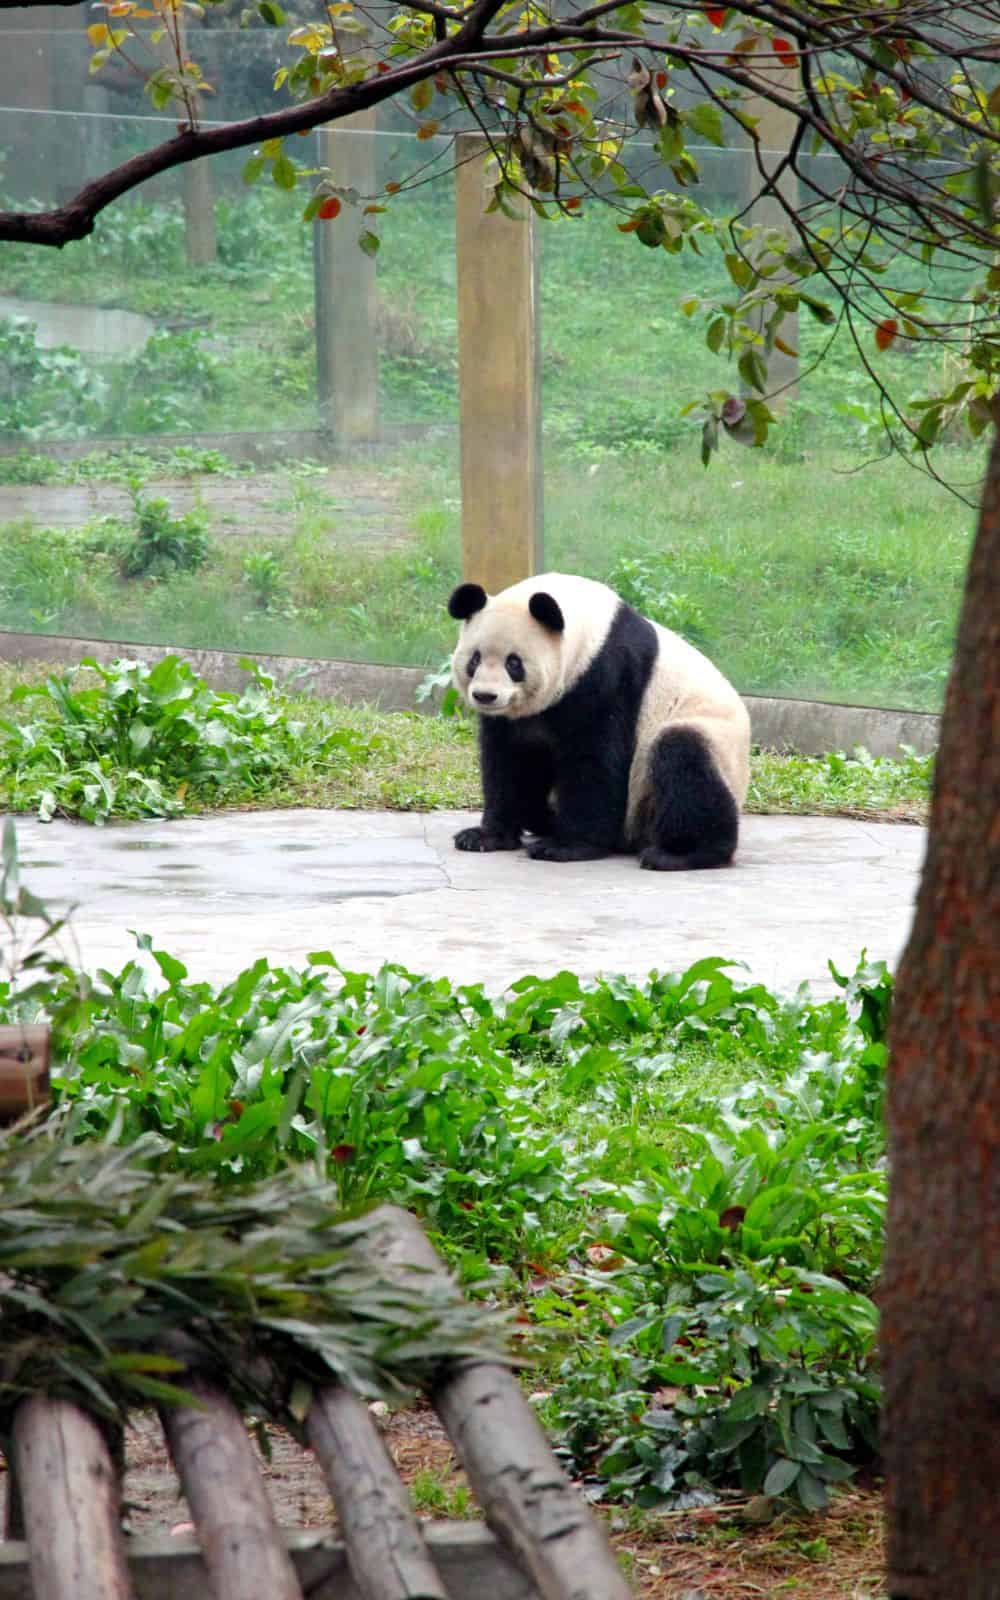 What Do Pandas Symbolize